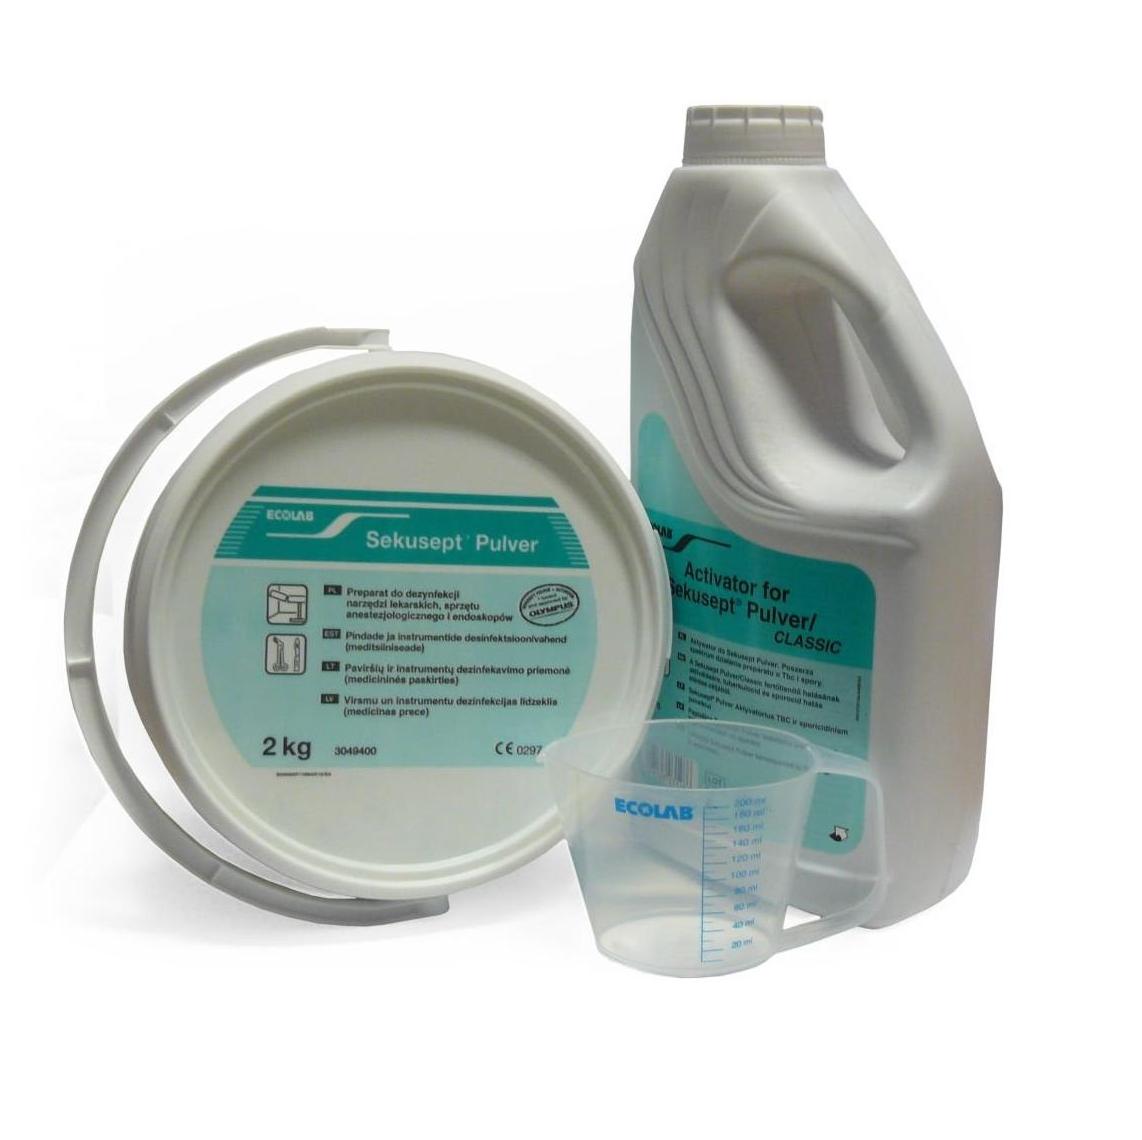 Preparaty do manualnej dezynfekcji narzędzi i wyrobów medycznych Ecolab Sekusept Pulver